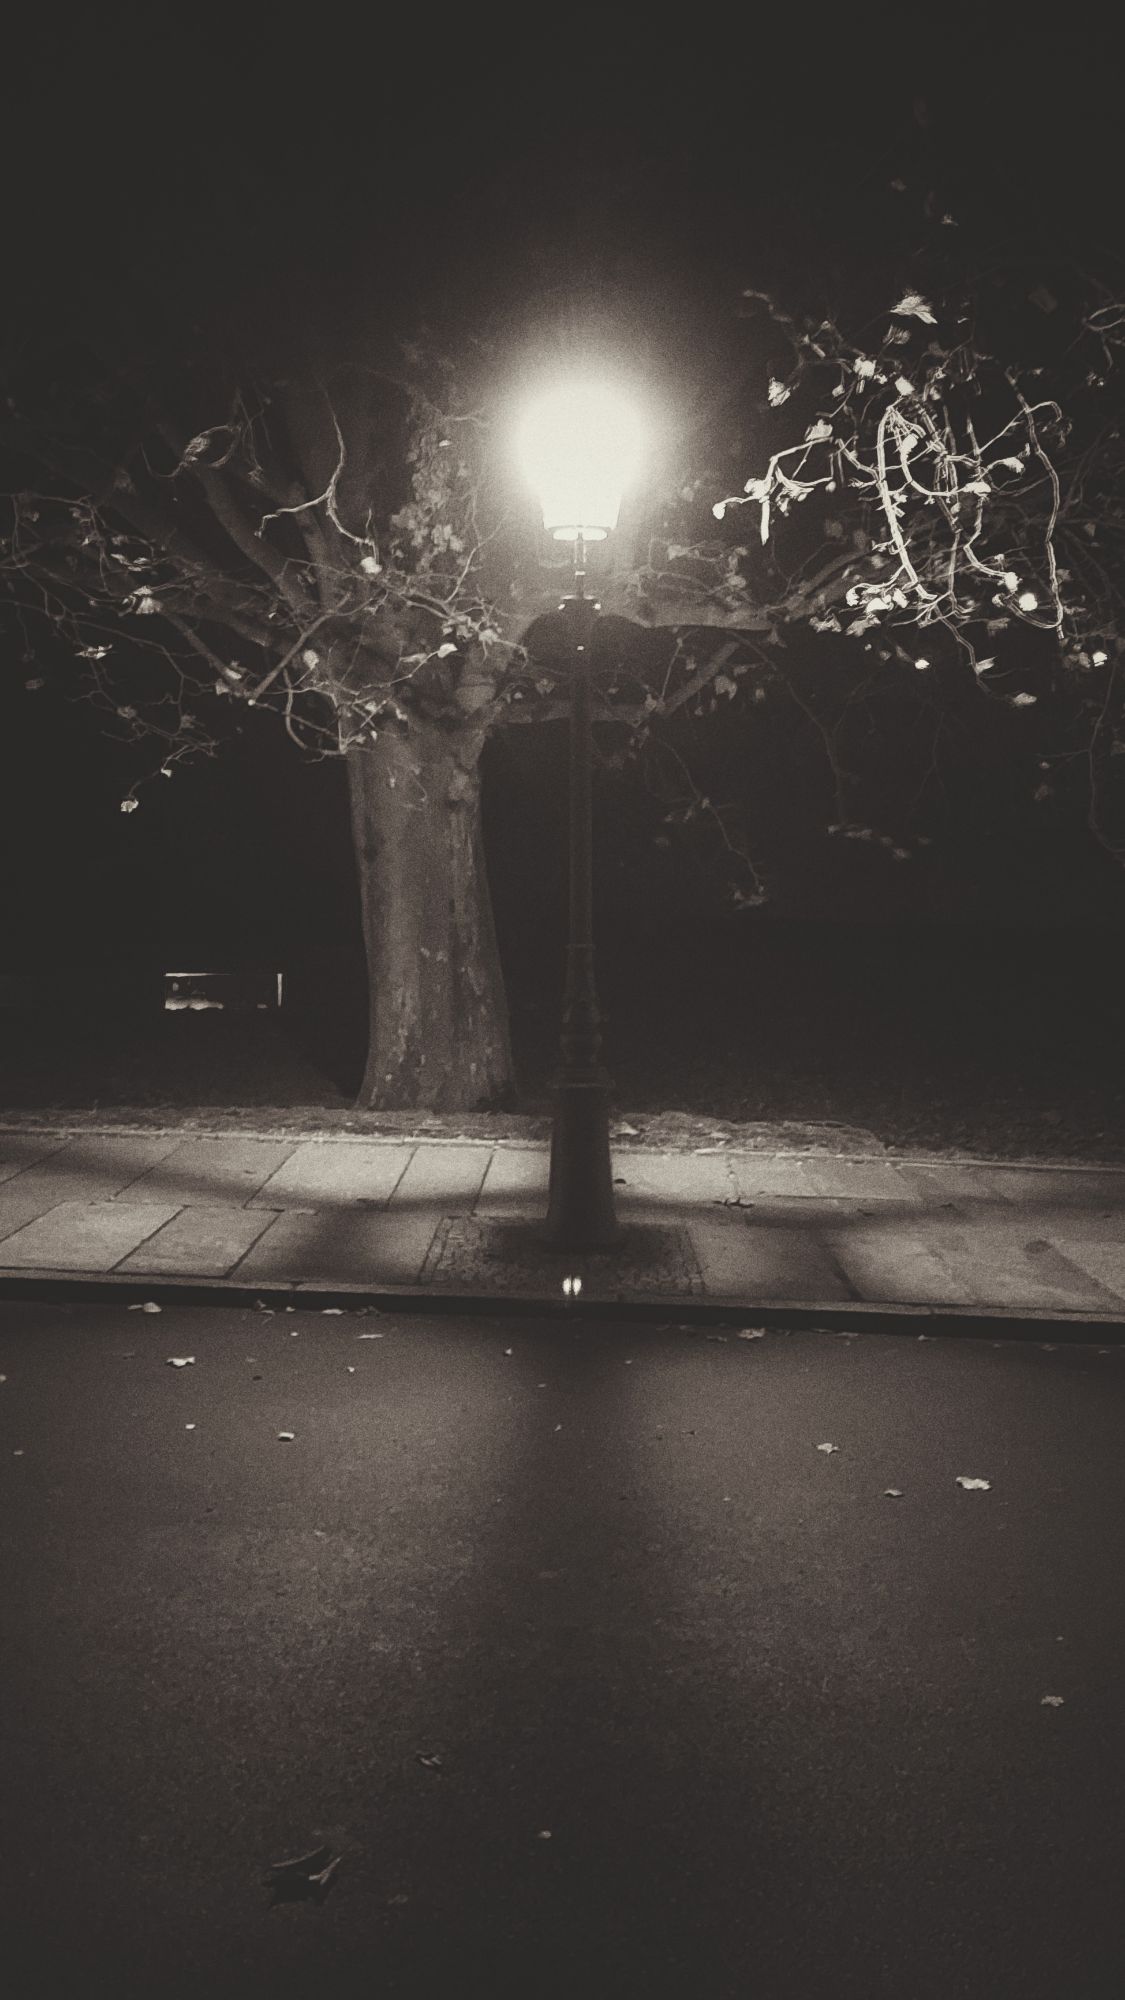 A lantern casting shadows below a tree.